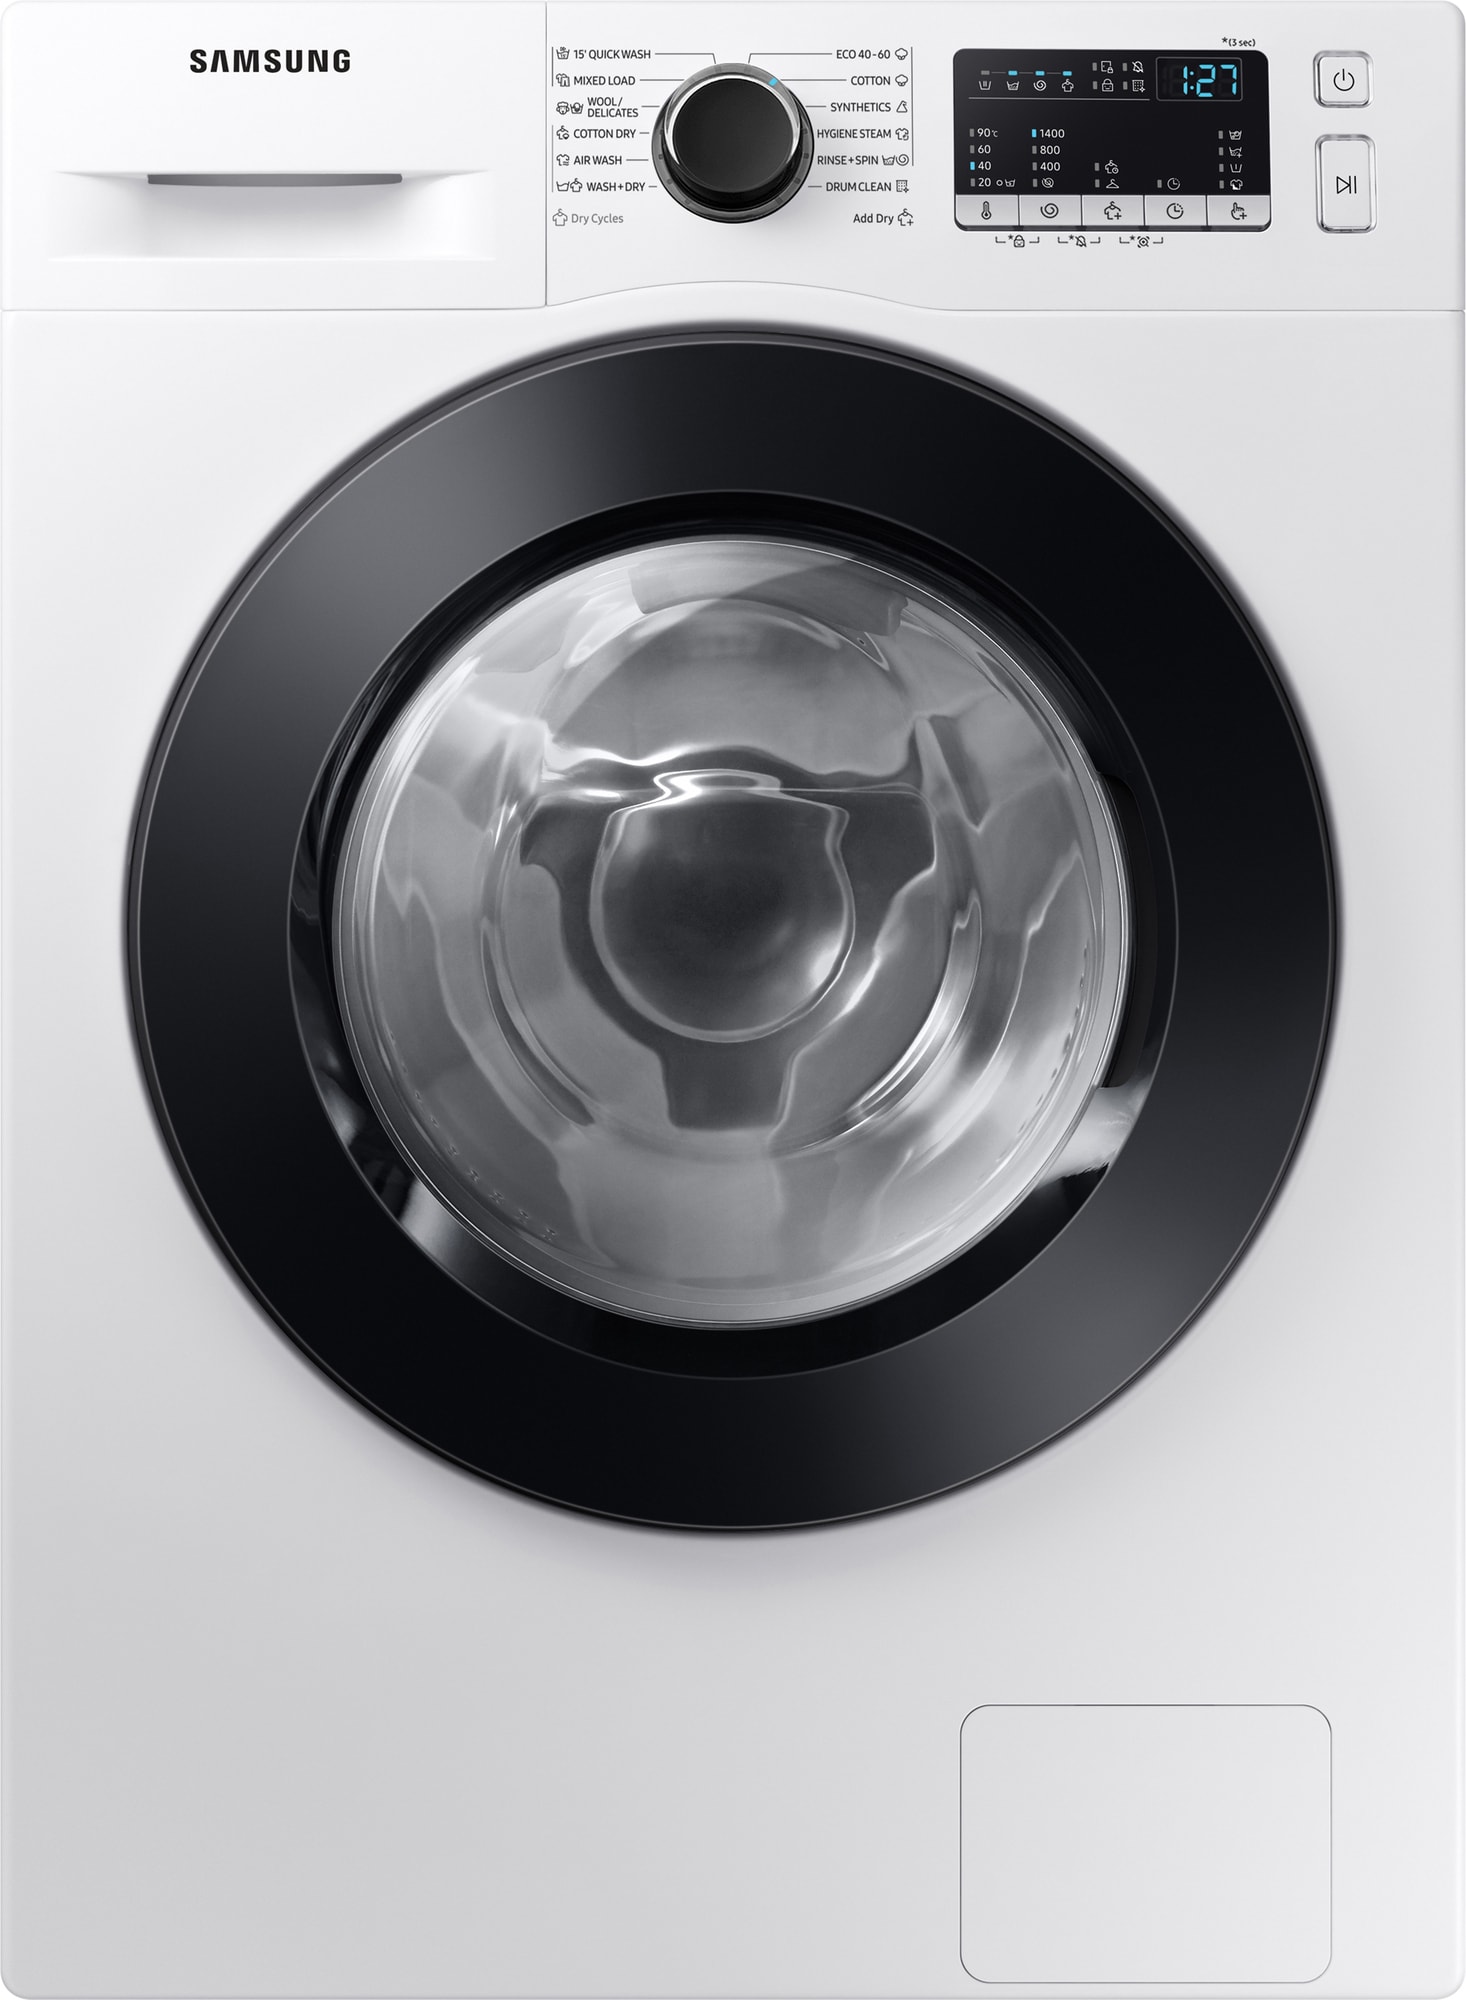 Køb Samsung Vaskemaskiner online til meget lav pris!